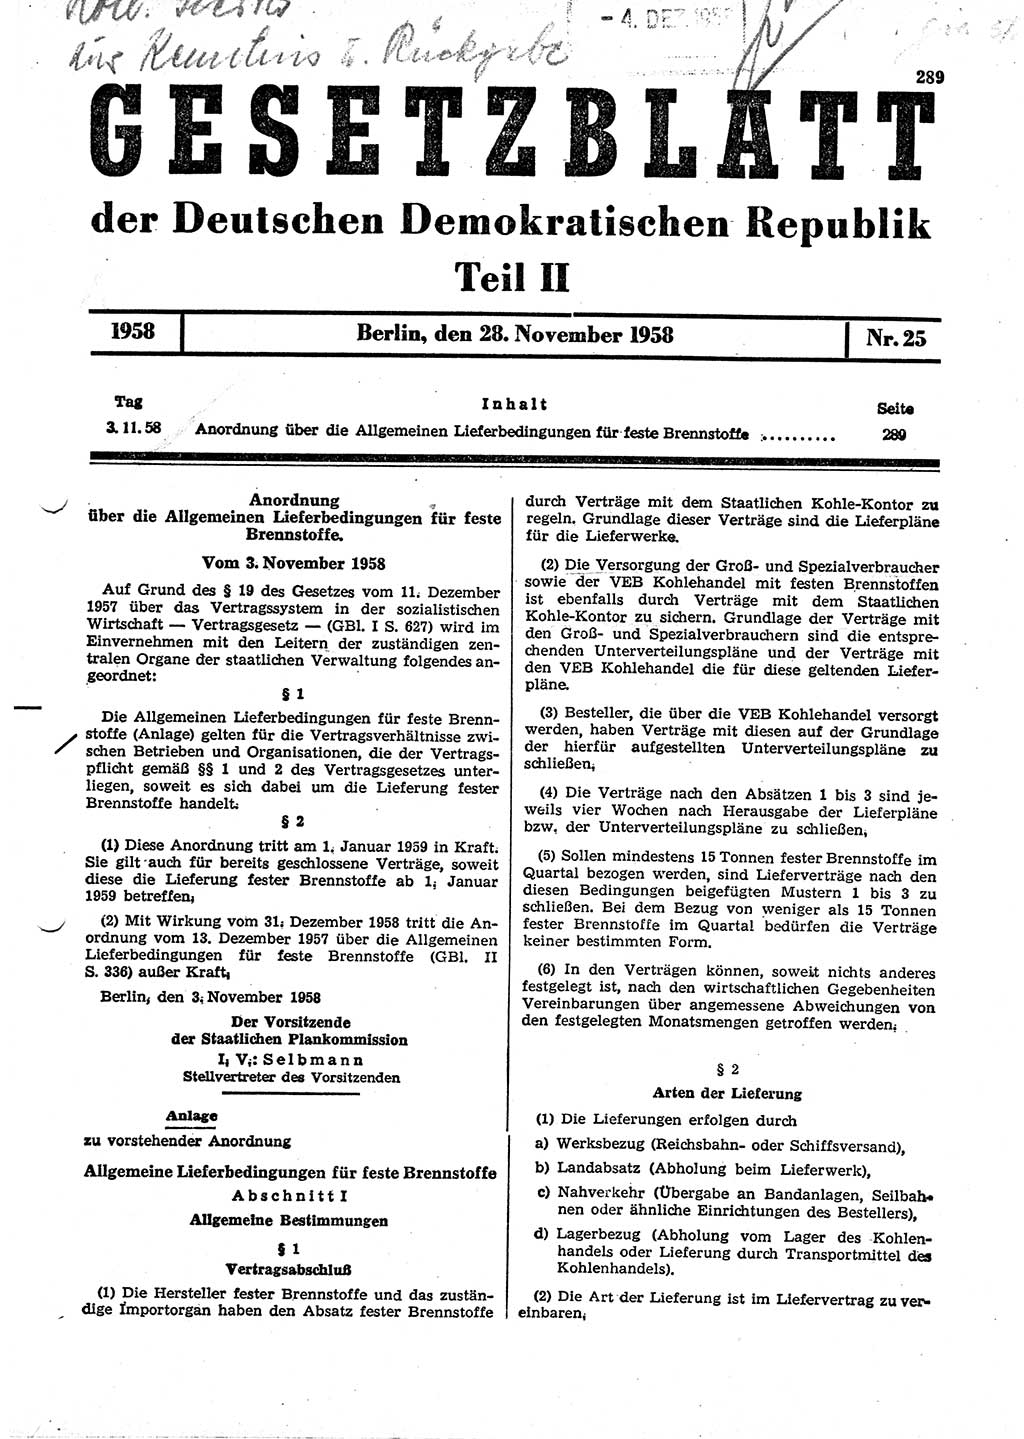 Gesetzblatt (GBl.) der Deutschen Demokratischen Republik (DDR) Teil ⅠⅠ 1958, Seite 289 (GBl. DDR ⅠⅠ 1958, S. 289)